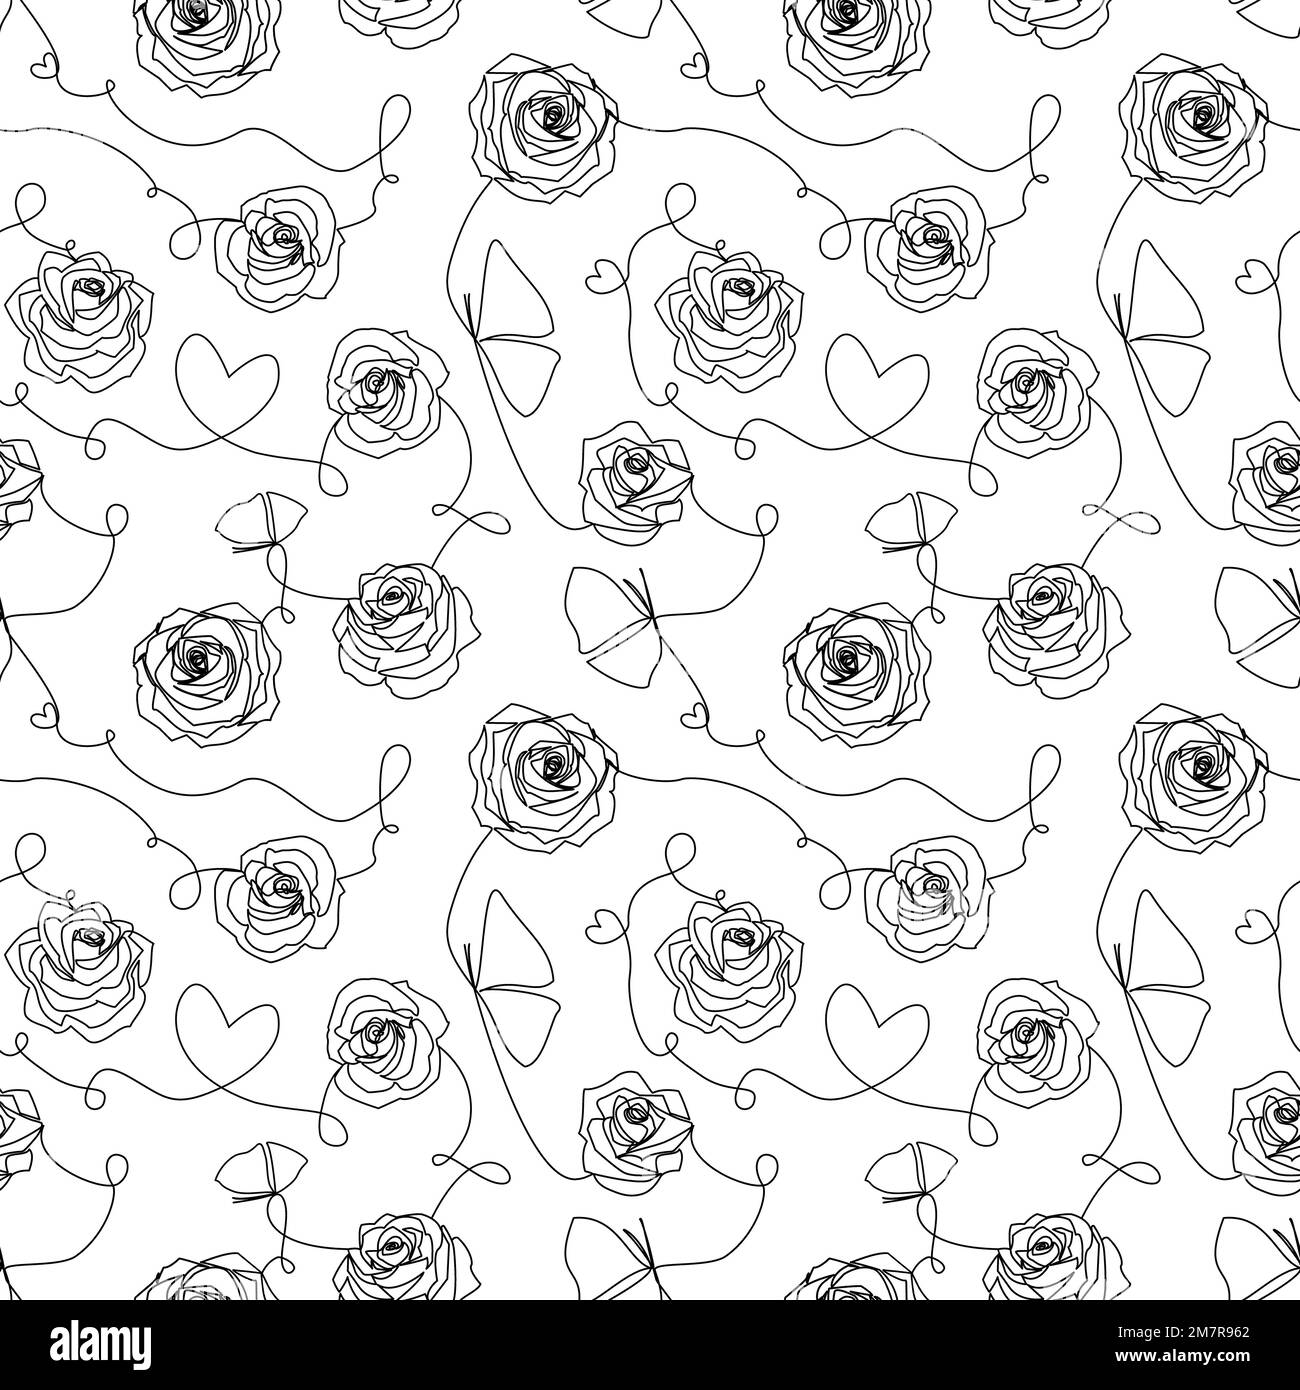 Einzeilige Schwarzweiß-Zeichnung abstrakter zeitgenössischer Kunst. Modernes, nahtloses Muster mit Rosen, Blumen, Herzen, Schmetterlingen aus weißem, durchgehendem B Stockfoto